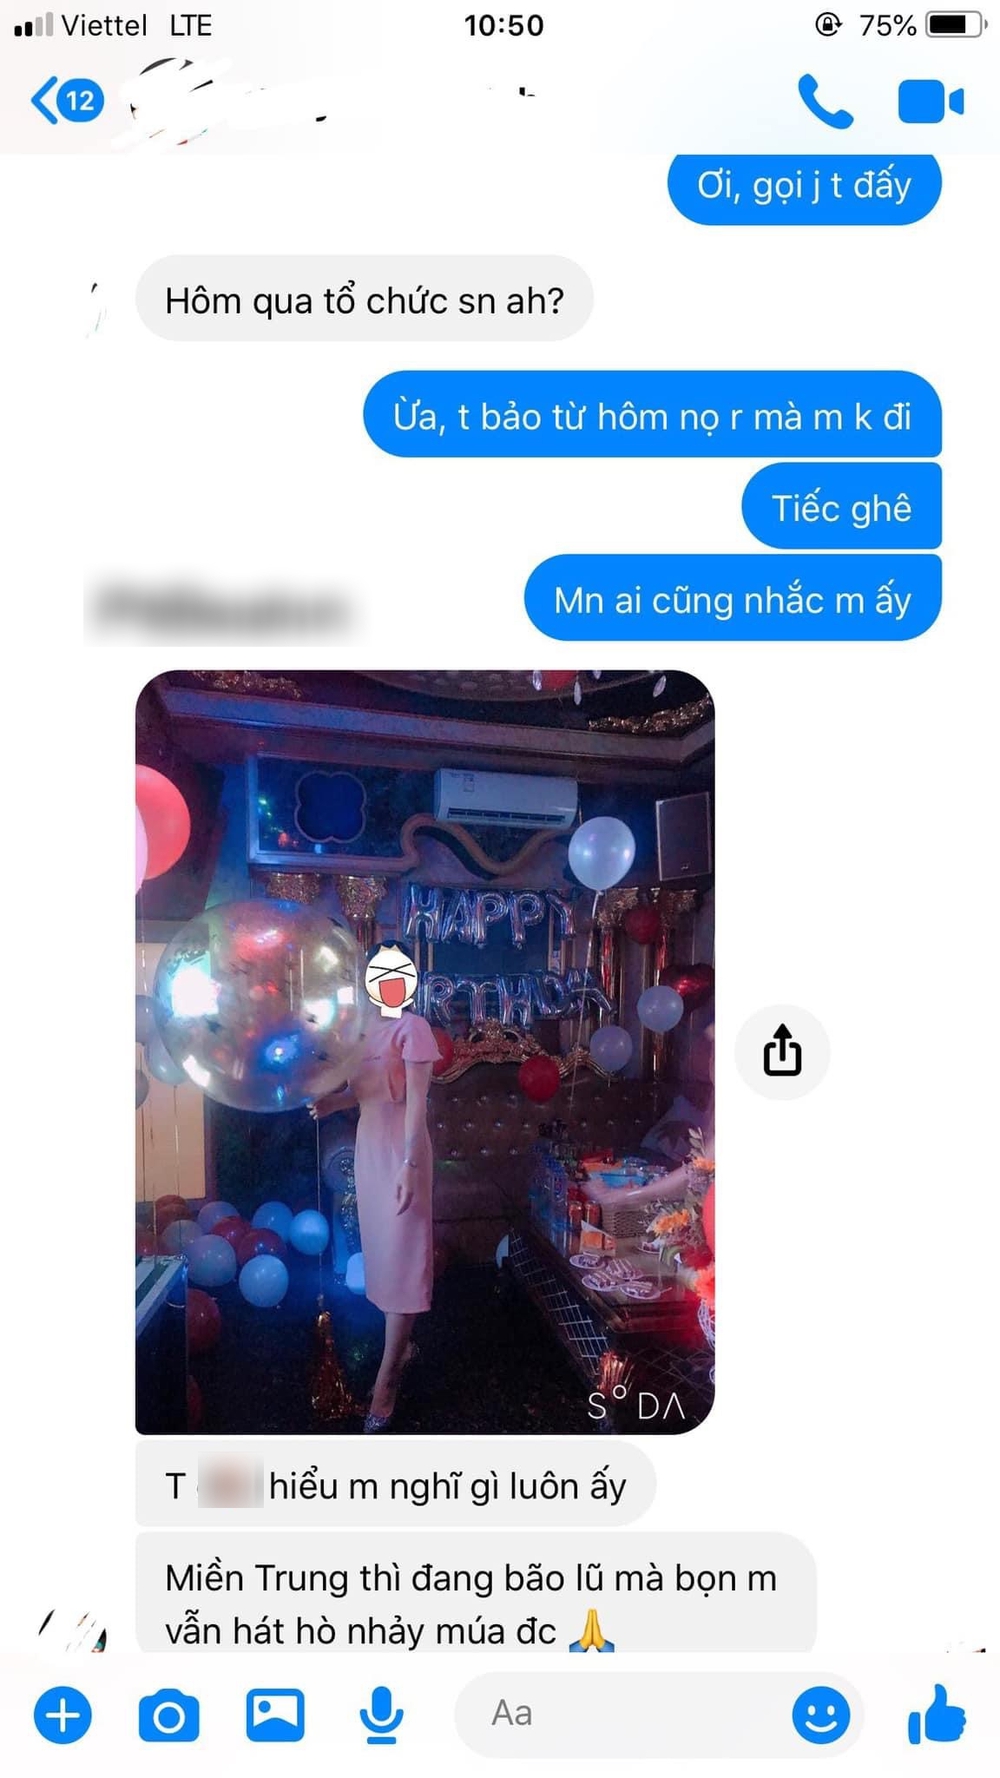 Đăng ảnh tổ chức tiệc sinh nhật, cô gái nhận phản ứng không ngờ từ bạn thân: Tin nhắn gây tranh cãi - Ảnh 2.